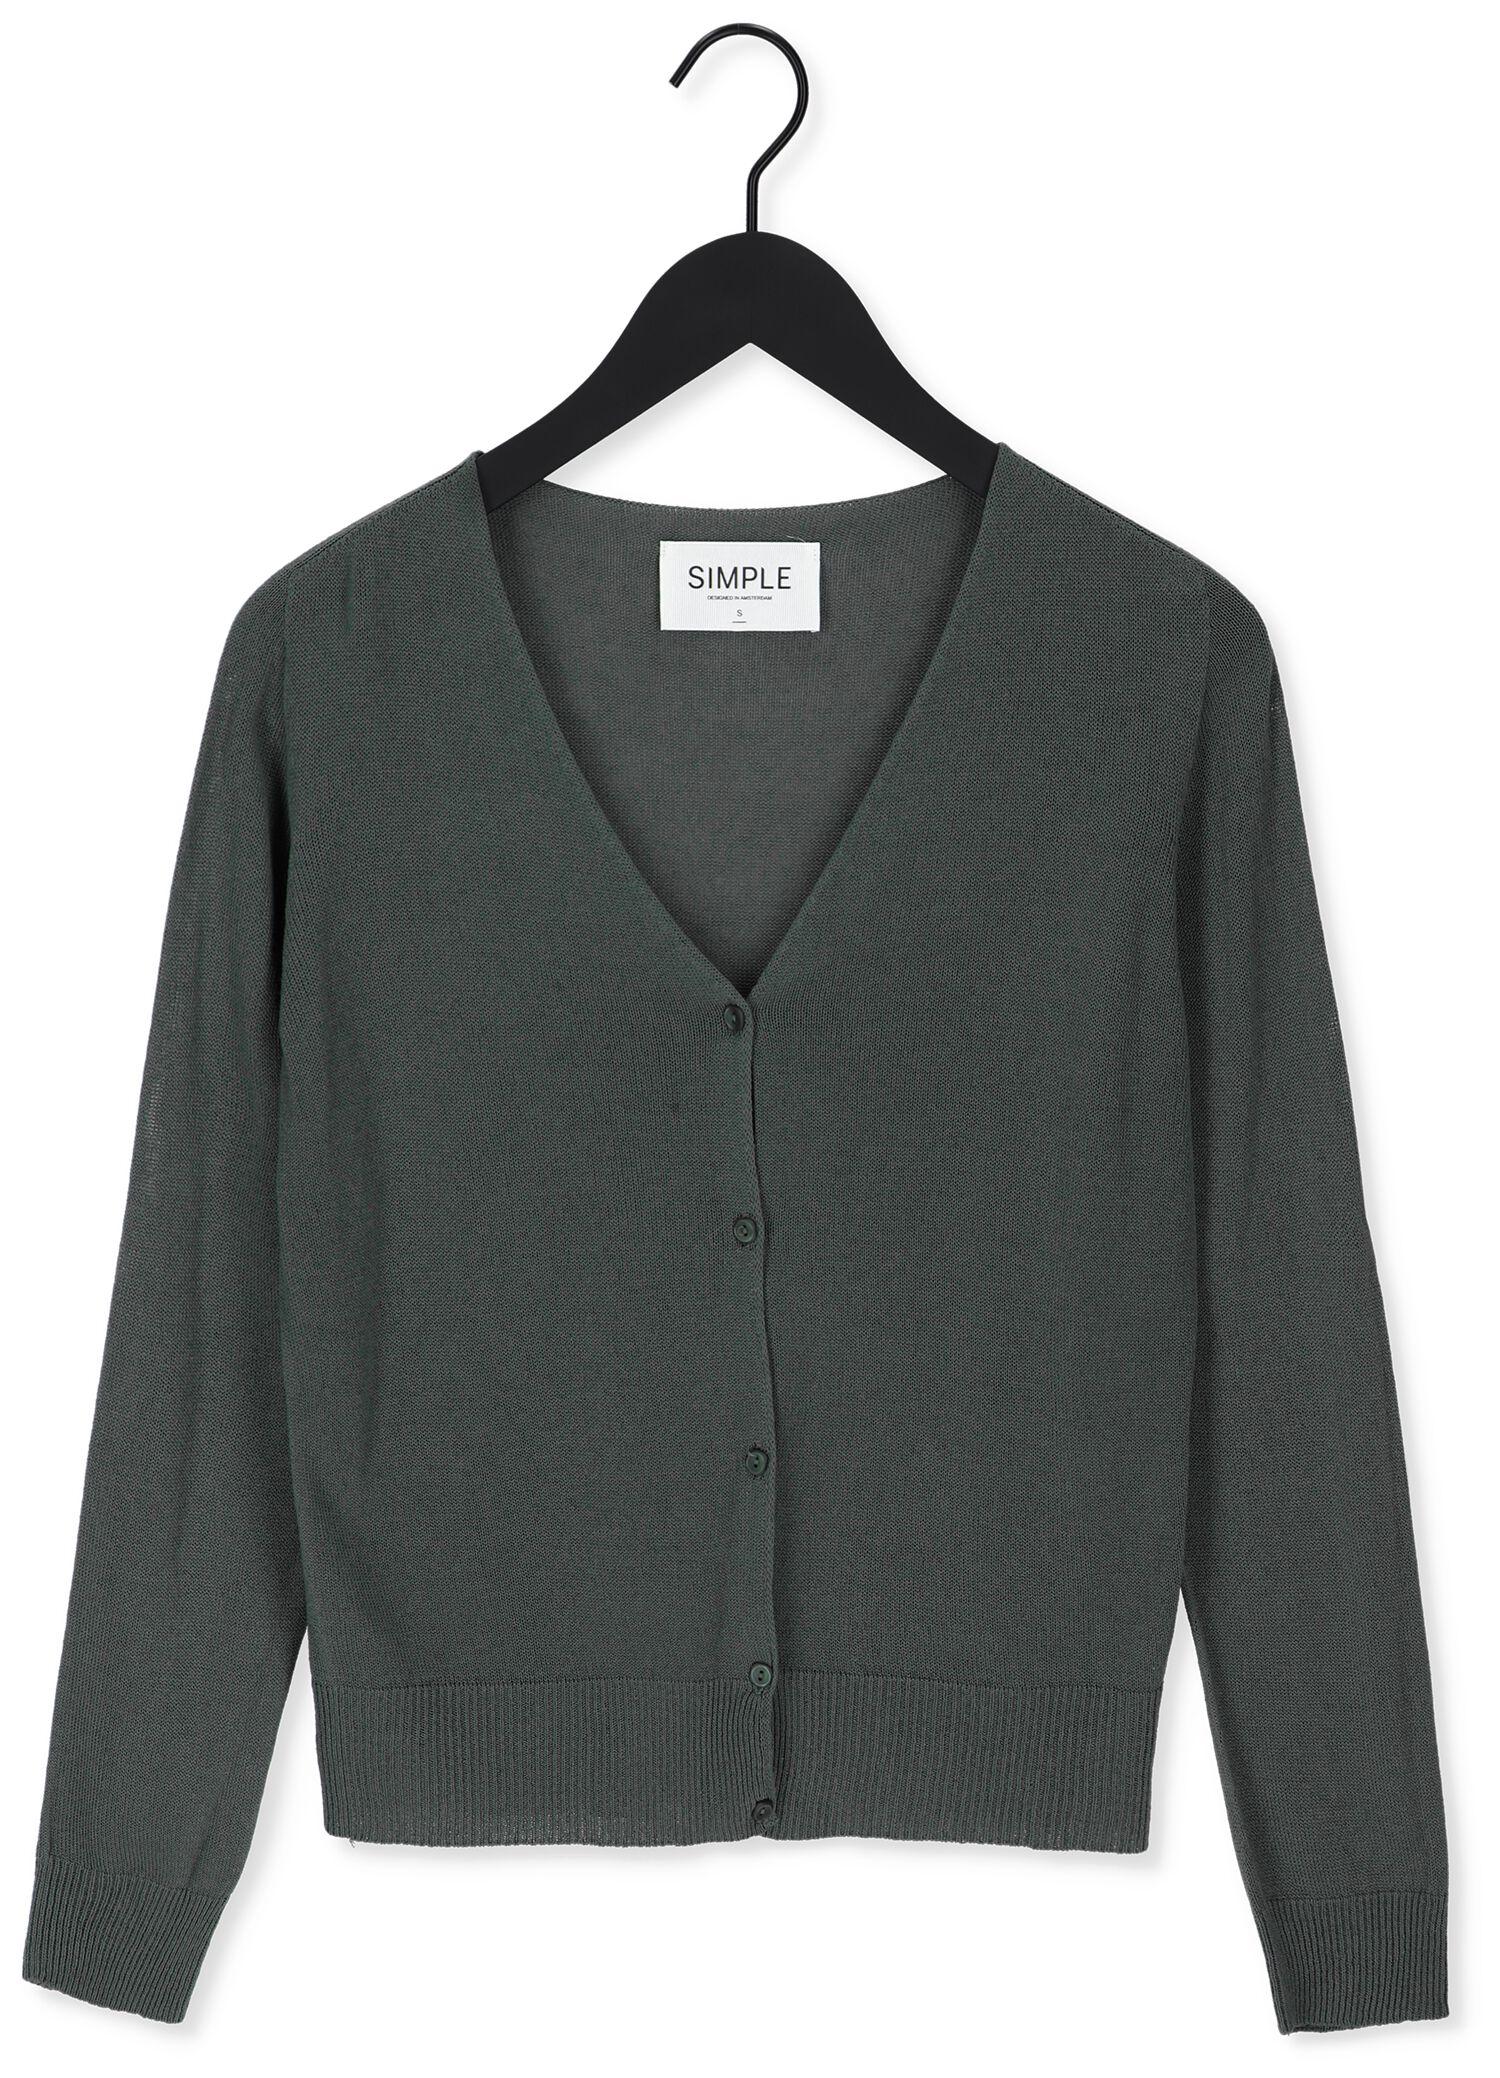 Simple Top Knitted Sweater Cornelia Es Nicht-gerade in Schwarz Damen Bekleidung Pullover und Strickwaren Pullover 